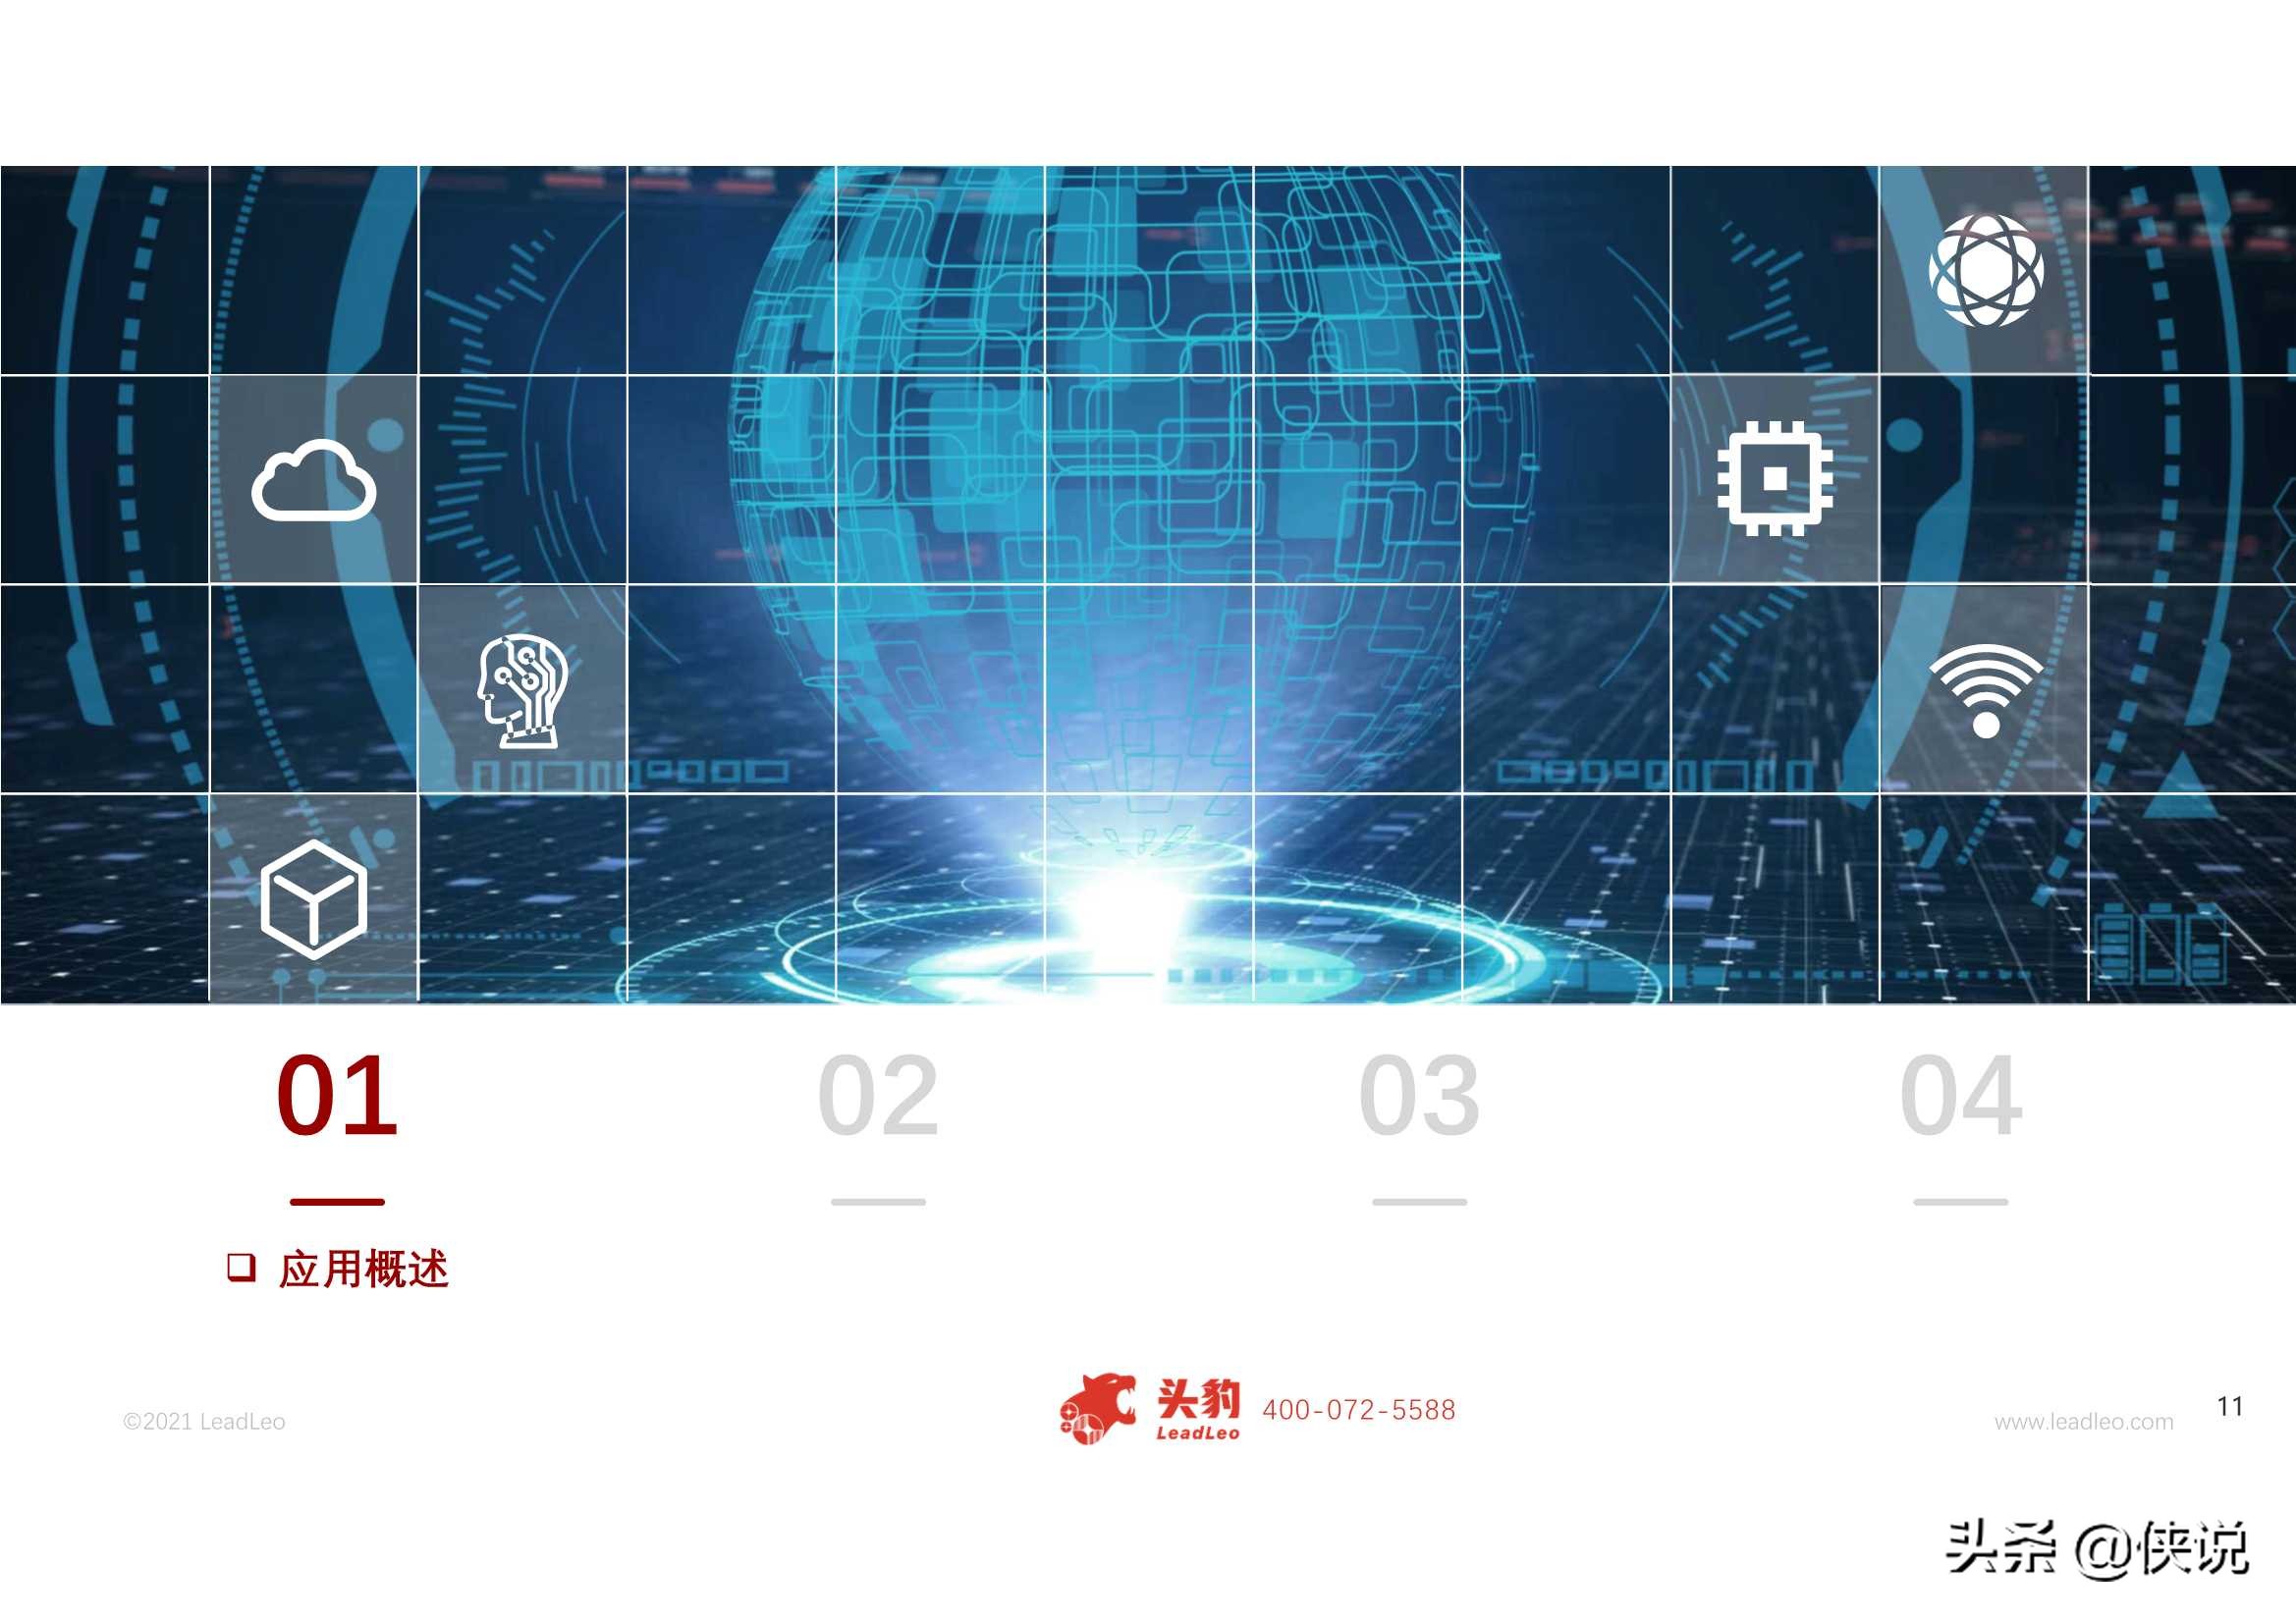 2021年中国人工智能在工业领域的应用研究报告